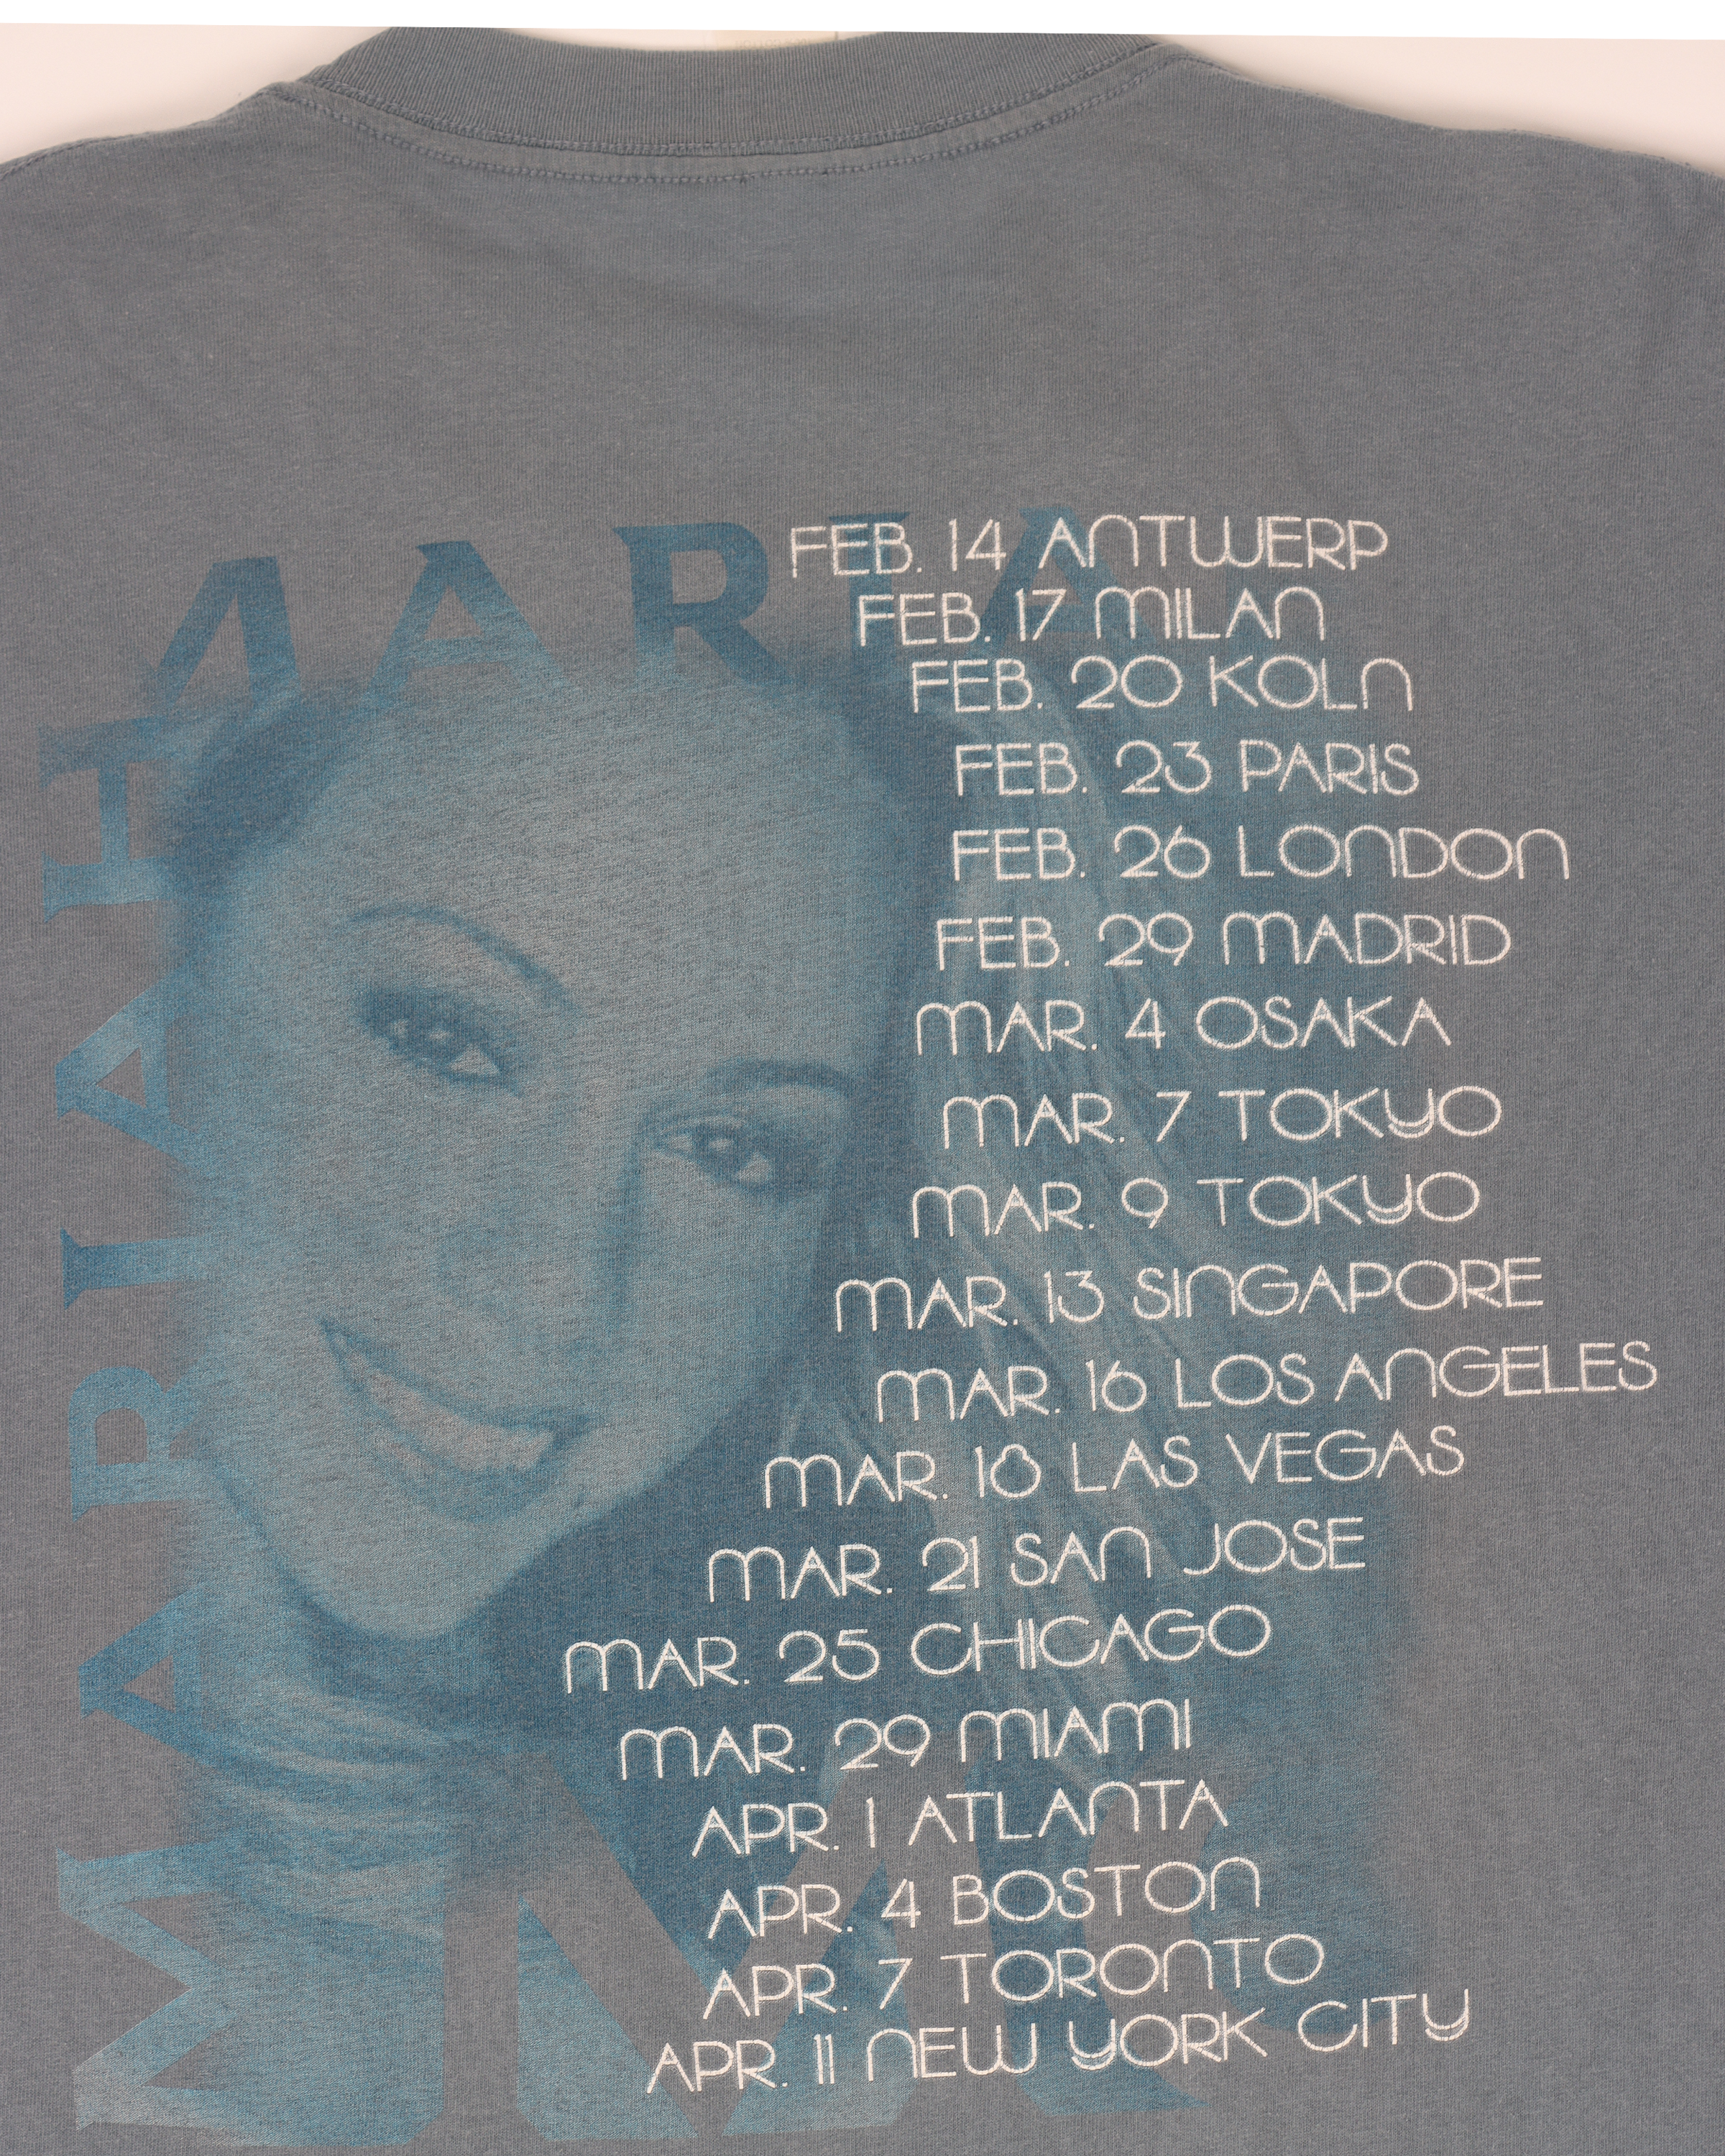 Mariah Carey 2000 Rainbow Tour T-Shirt